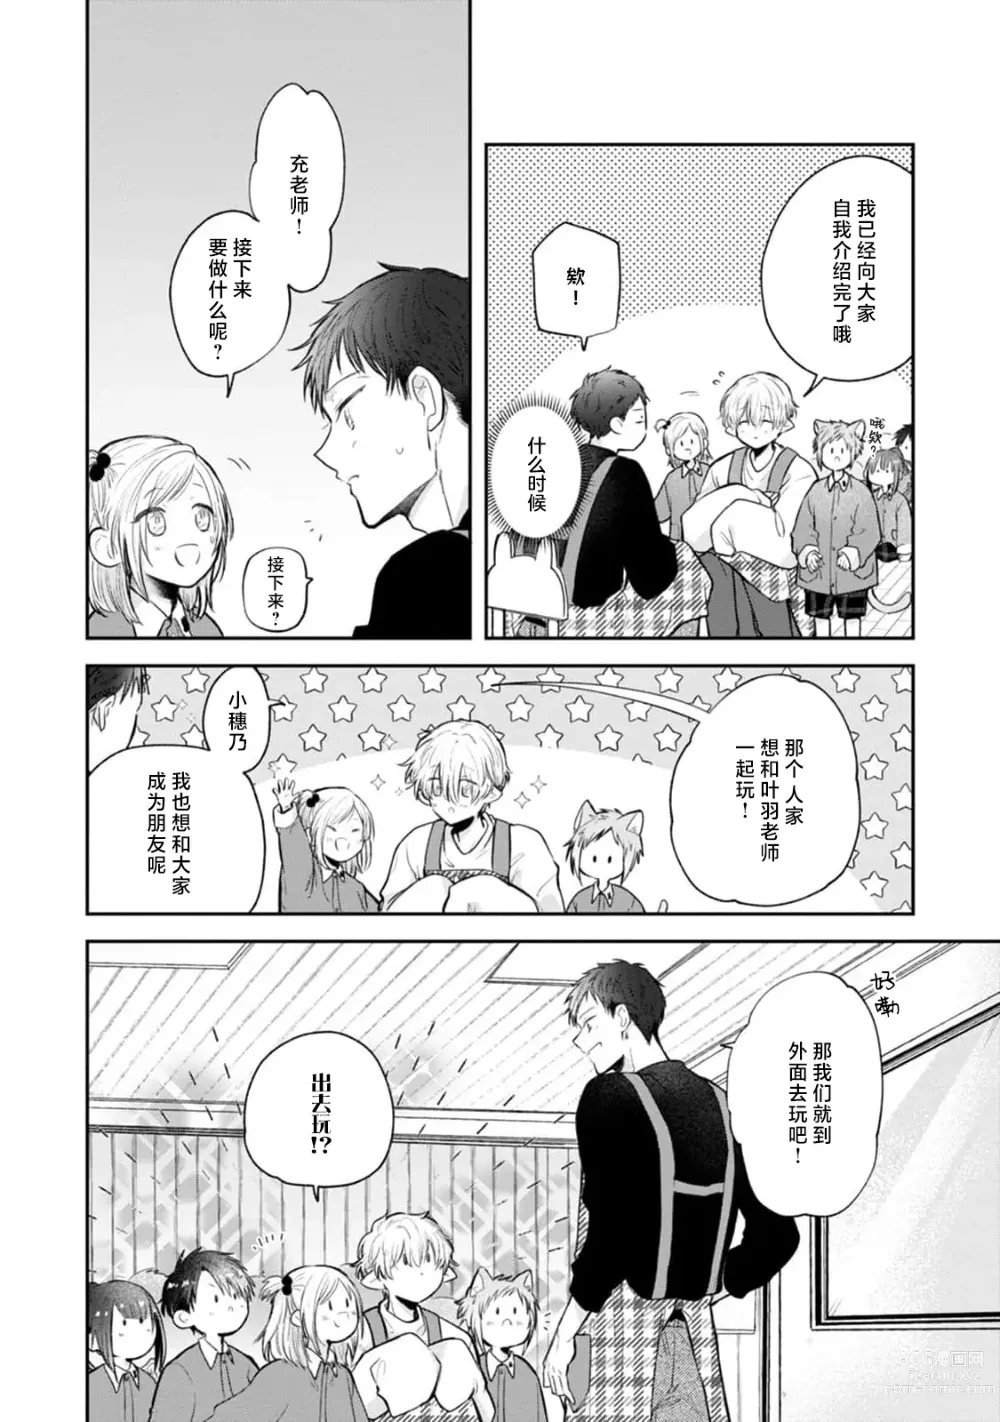 Page 10 of manga 叶羽老师全部是第一次 1-4